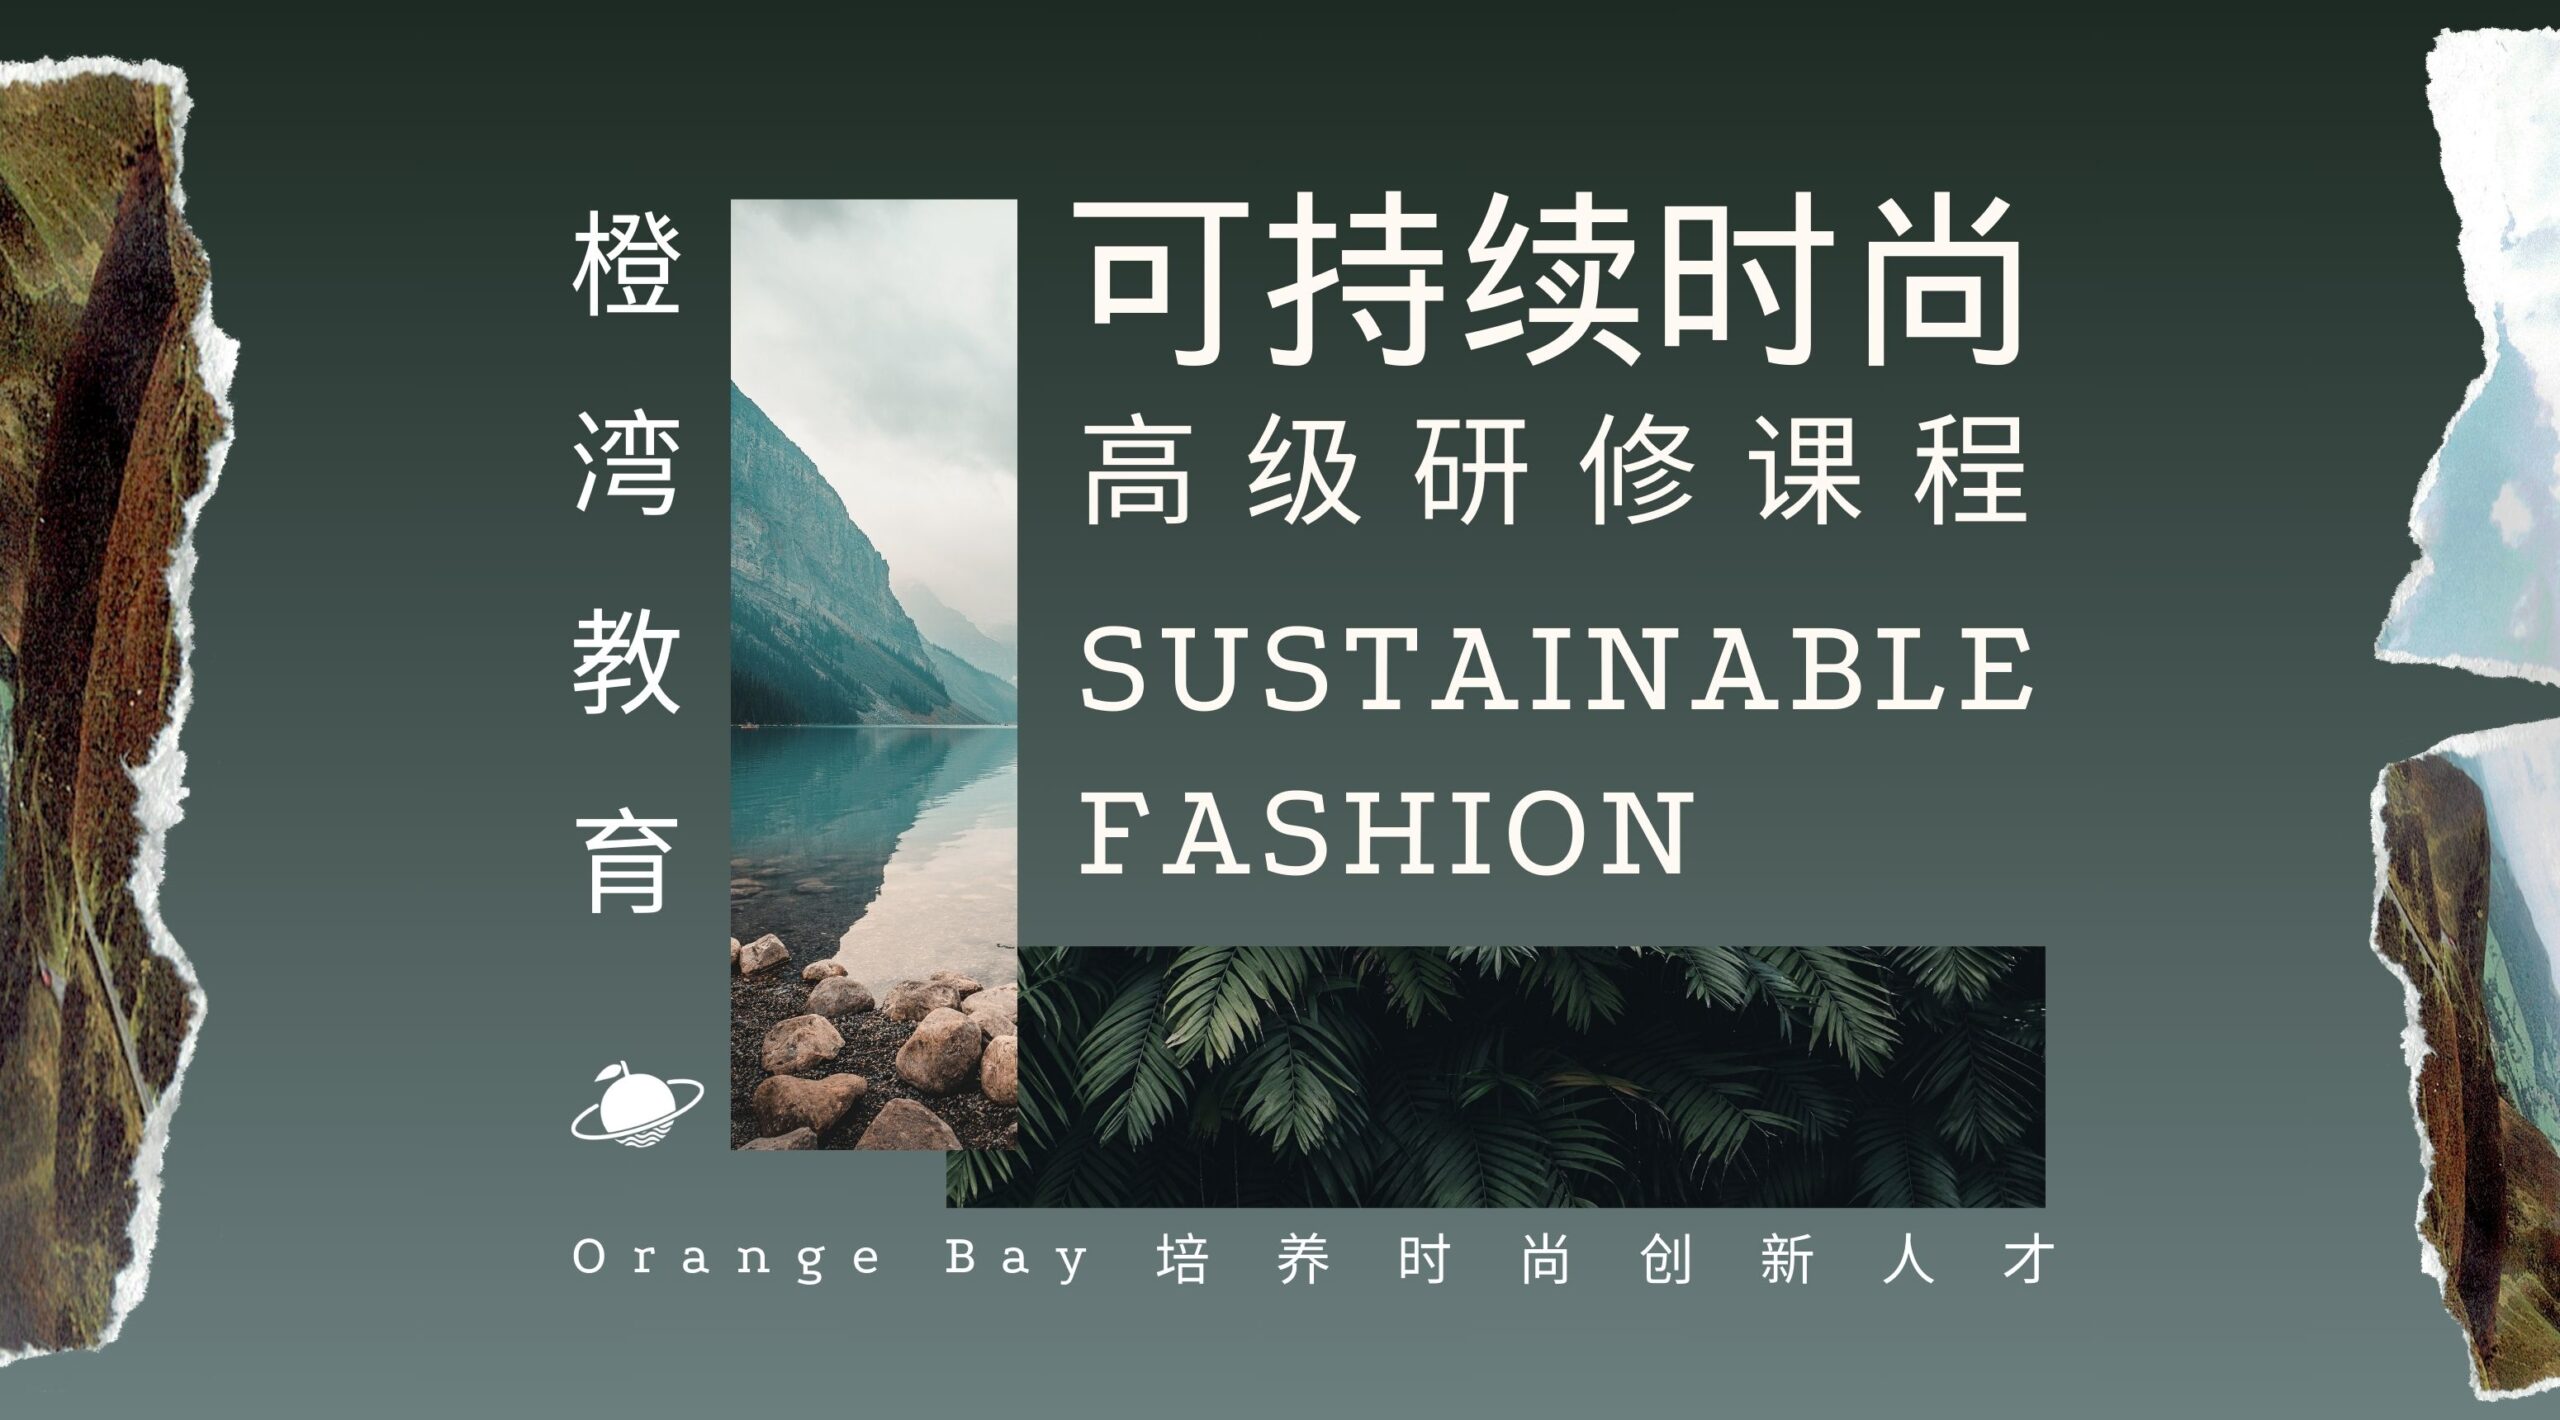 Orange Bay Launched Sustainable Fashion Workshop